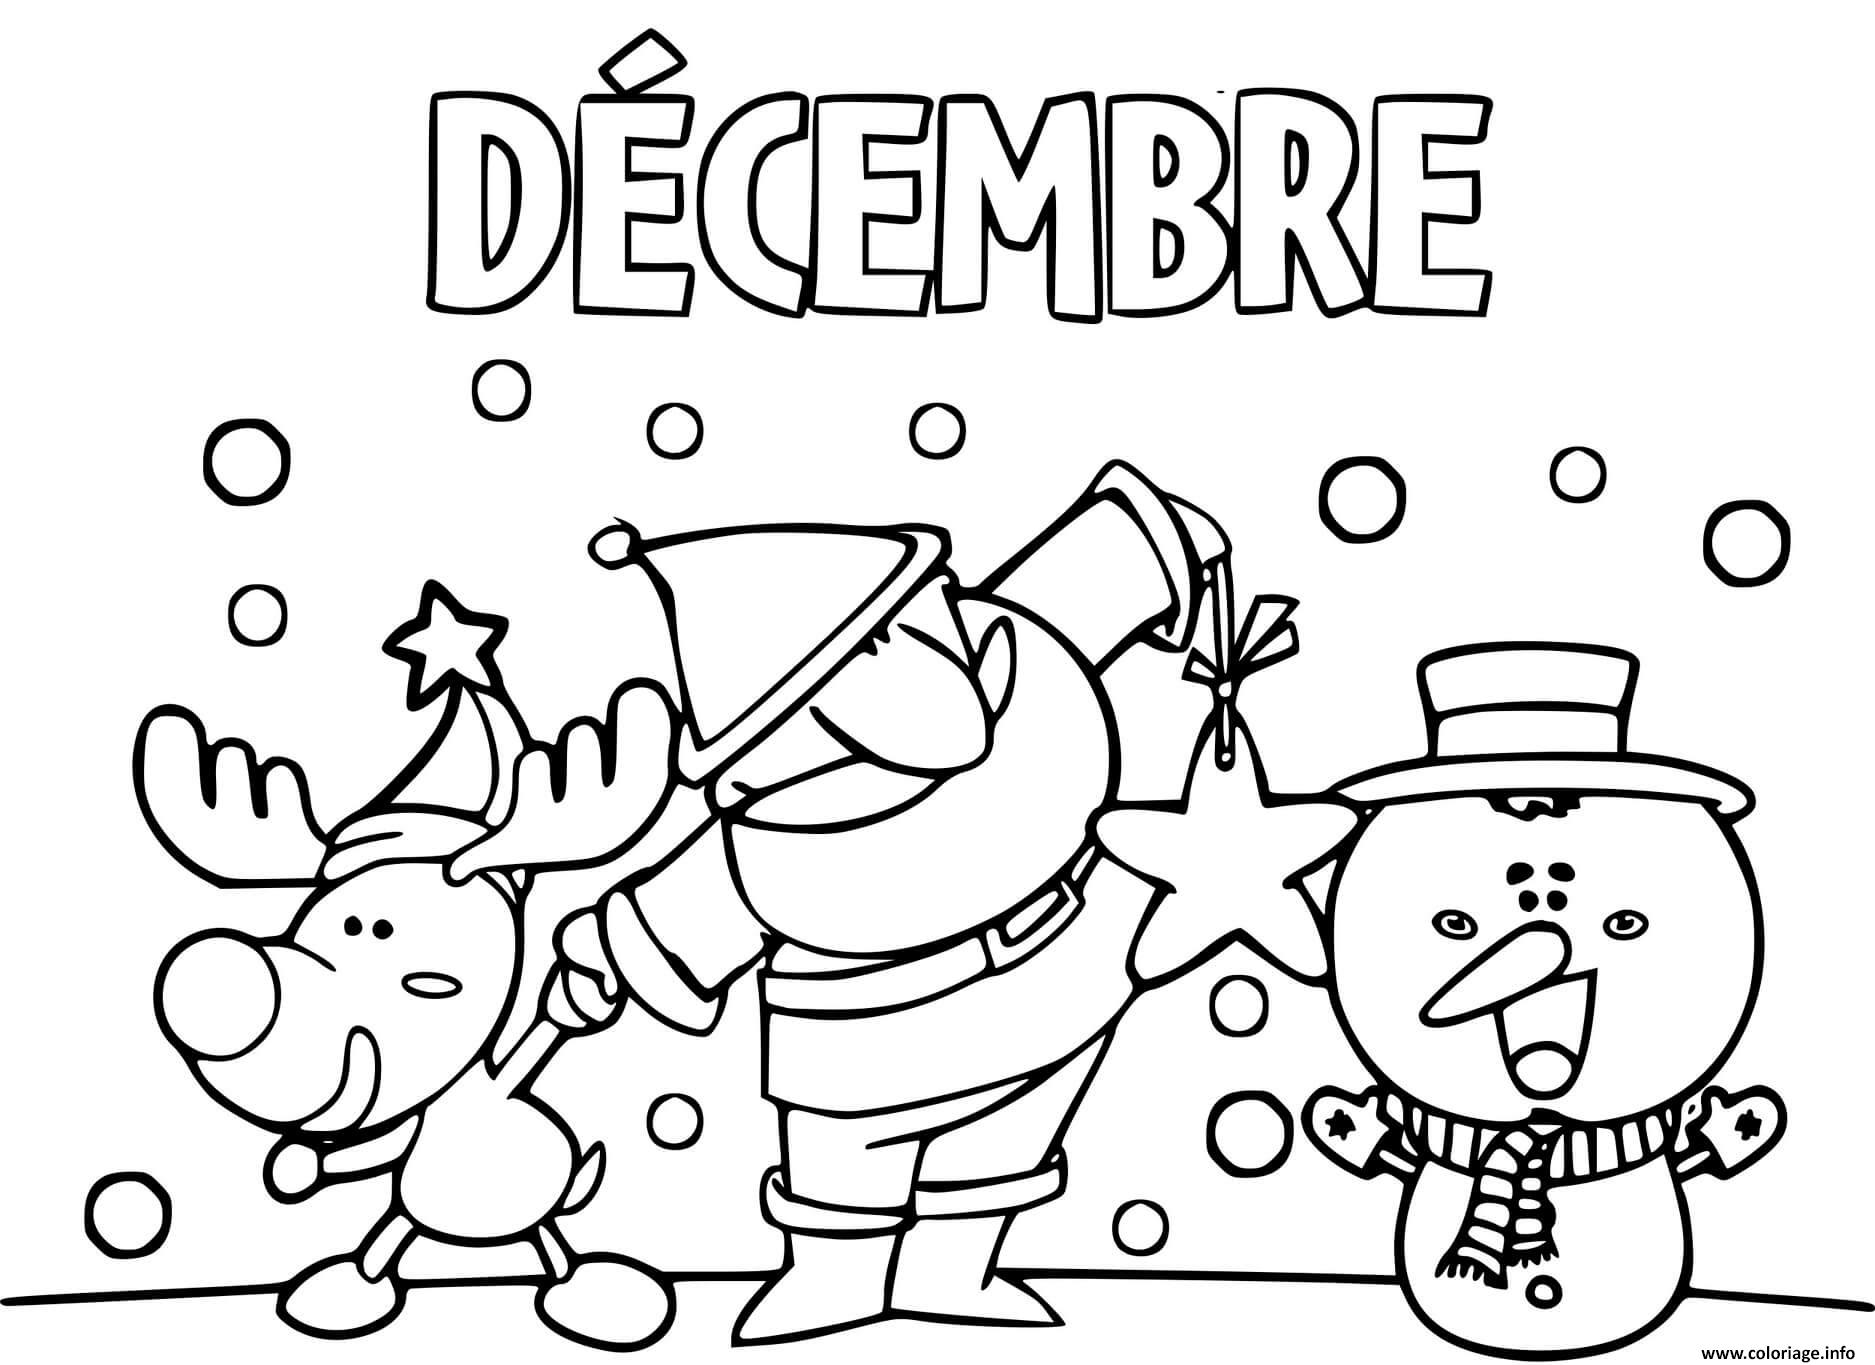 Coloriage Decembre Pere Noel Renne Et Bonhomme De Neige Tous Joyeux Dessin à Imprimer